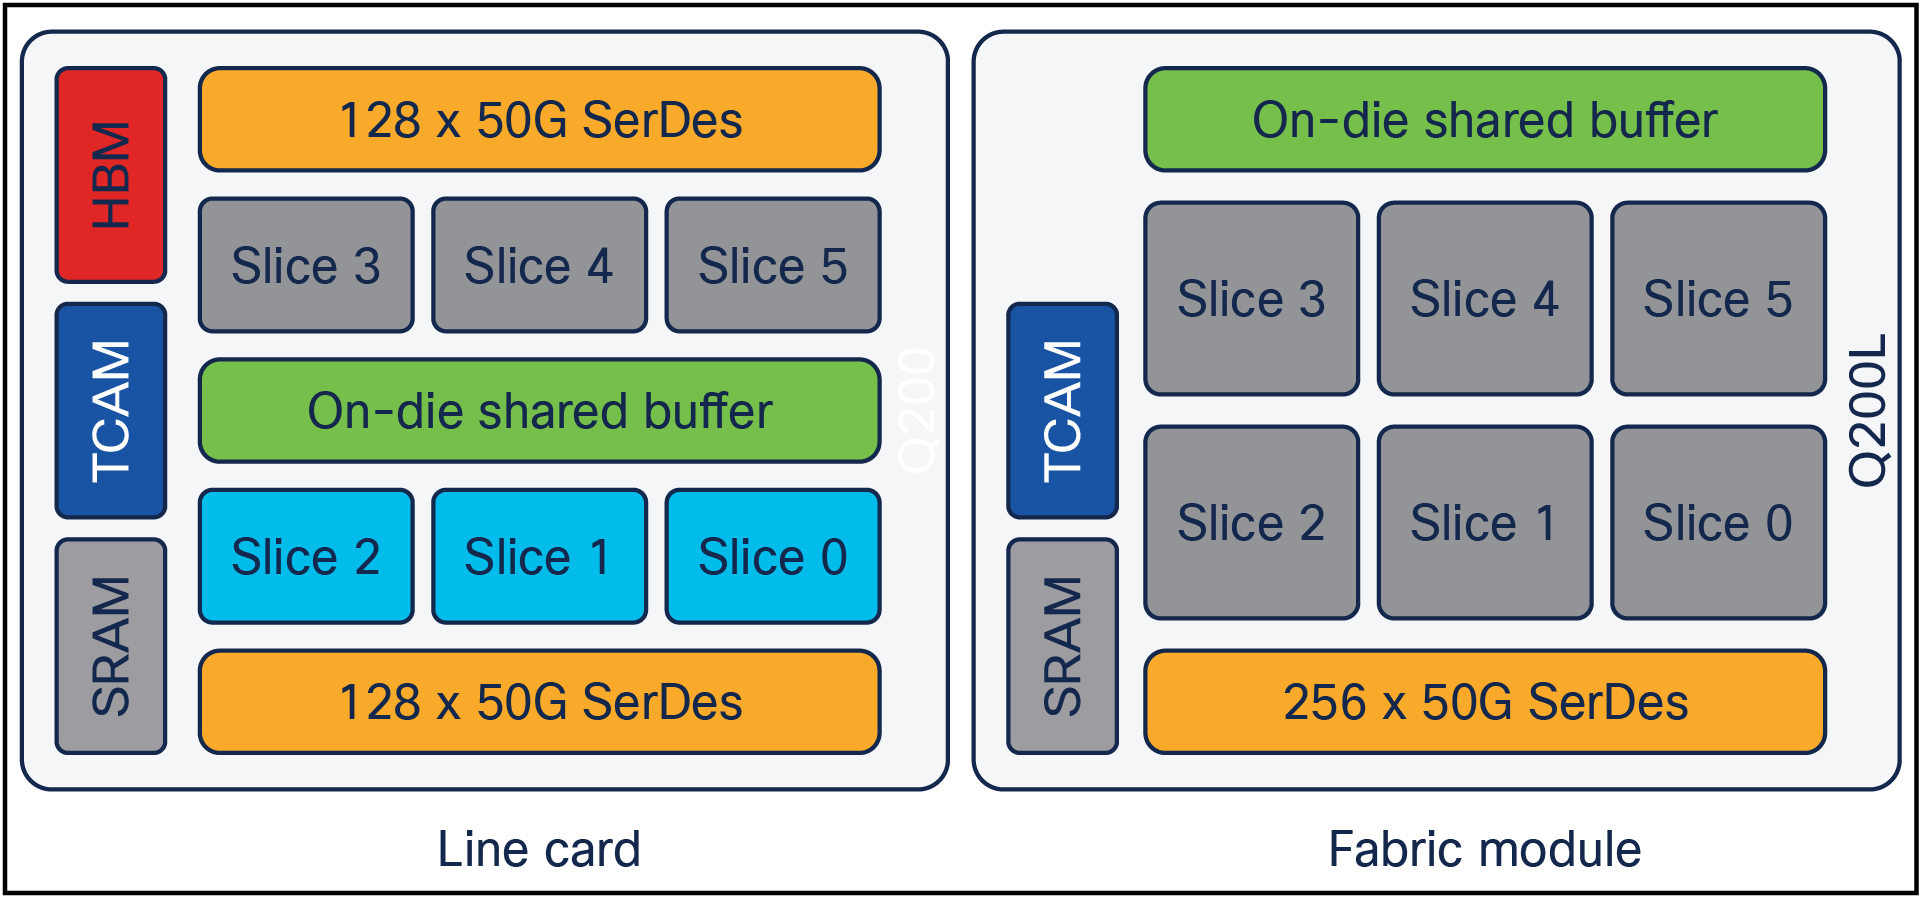 Cisco Silicon One Q200/Q200L slices